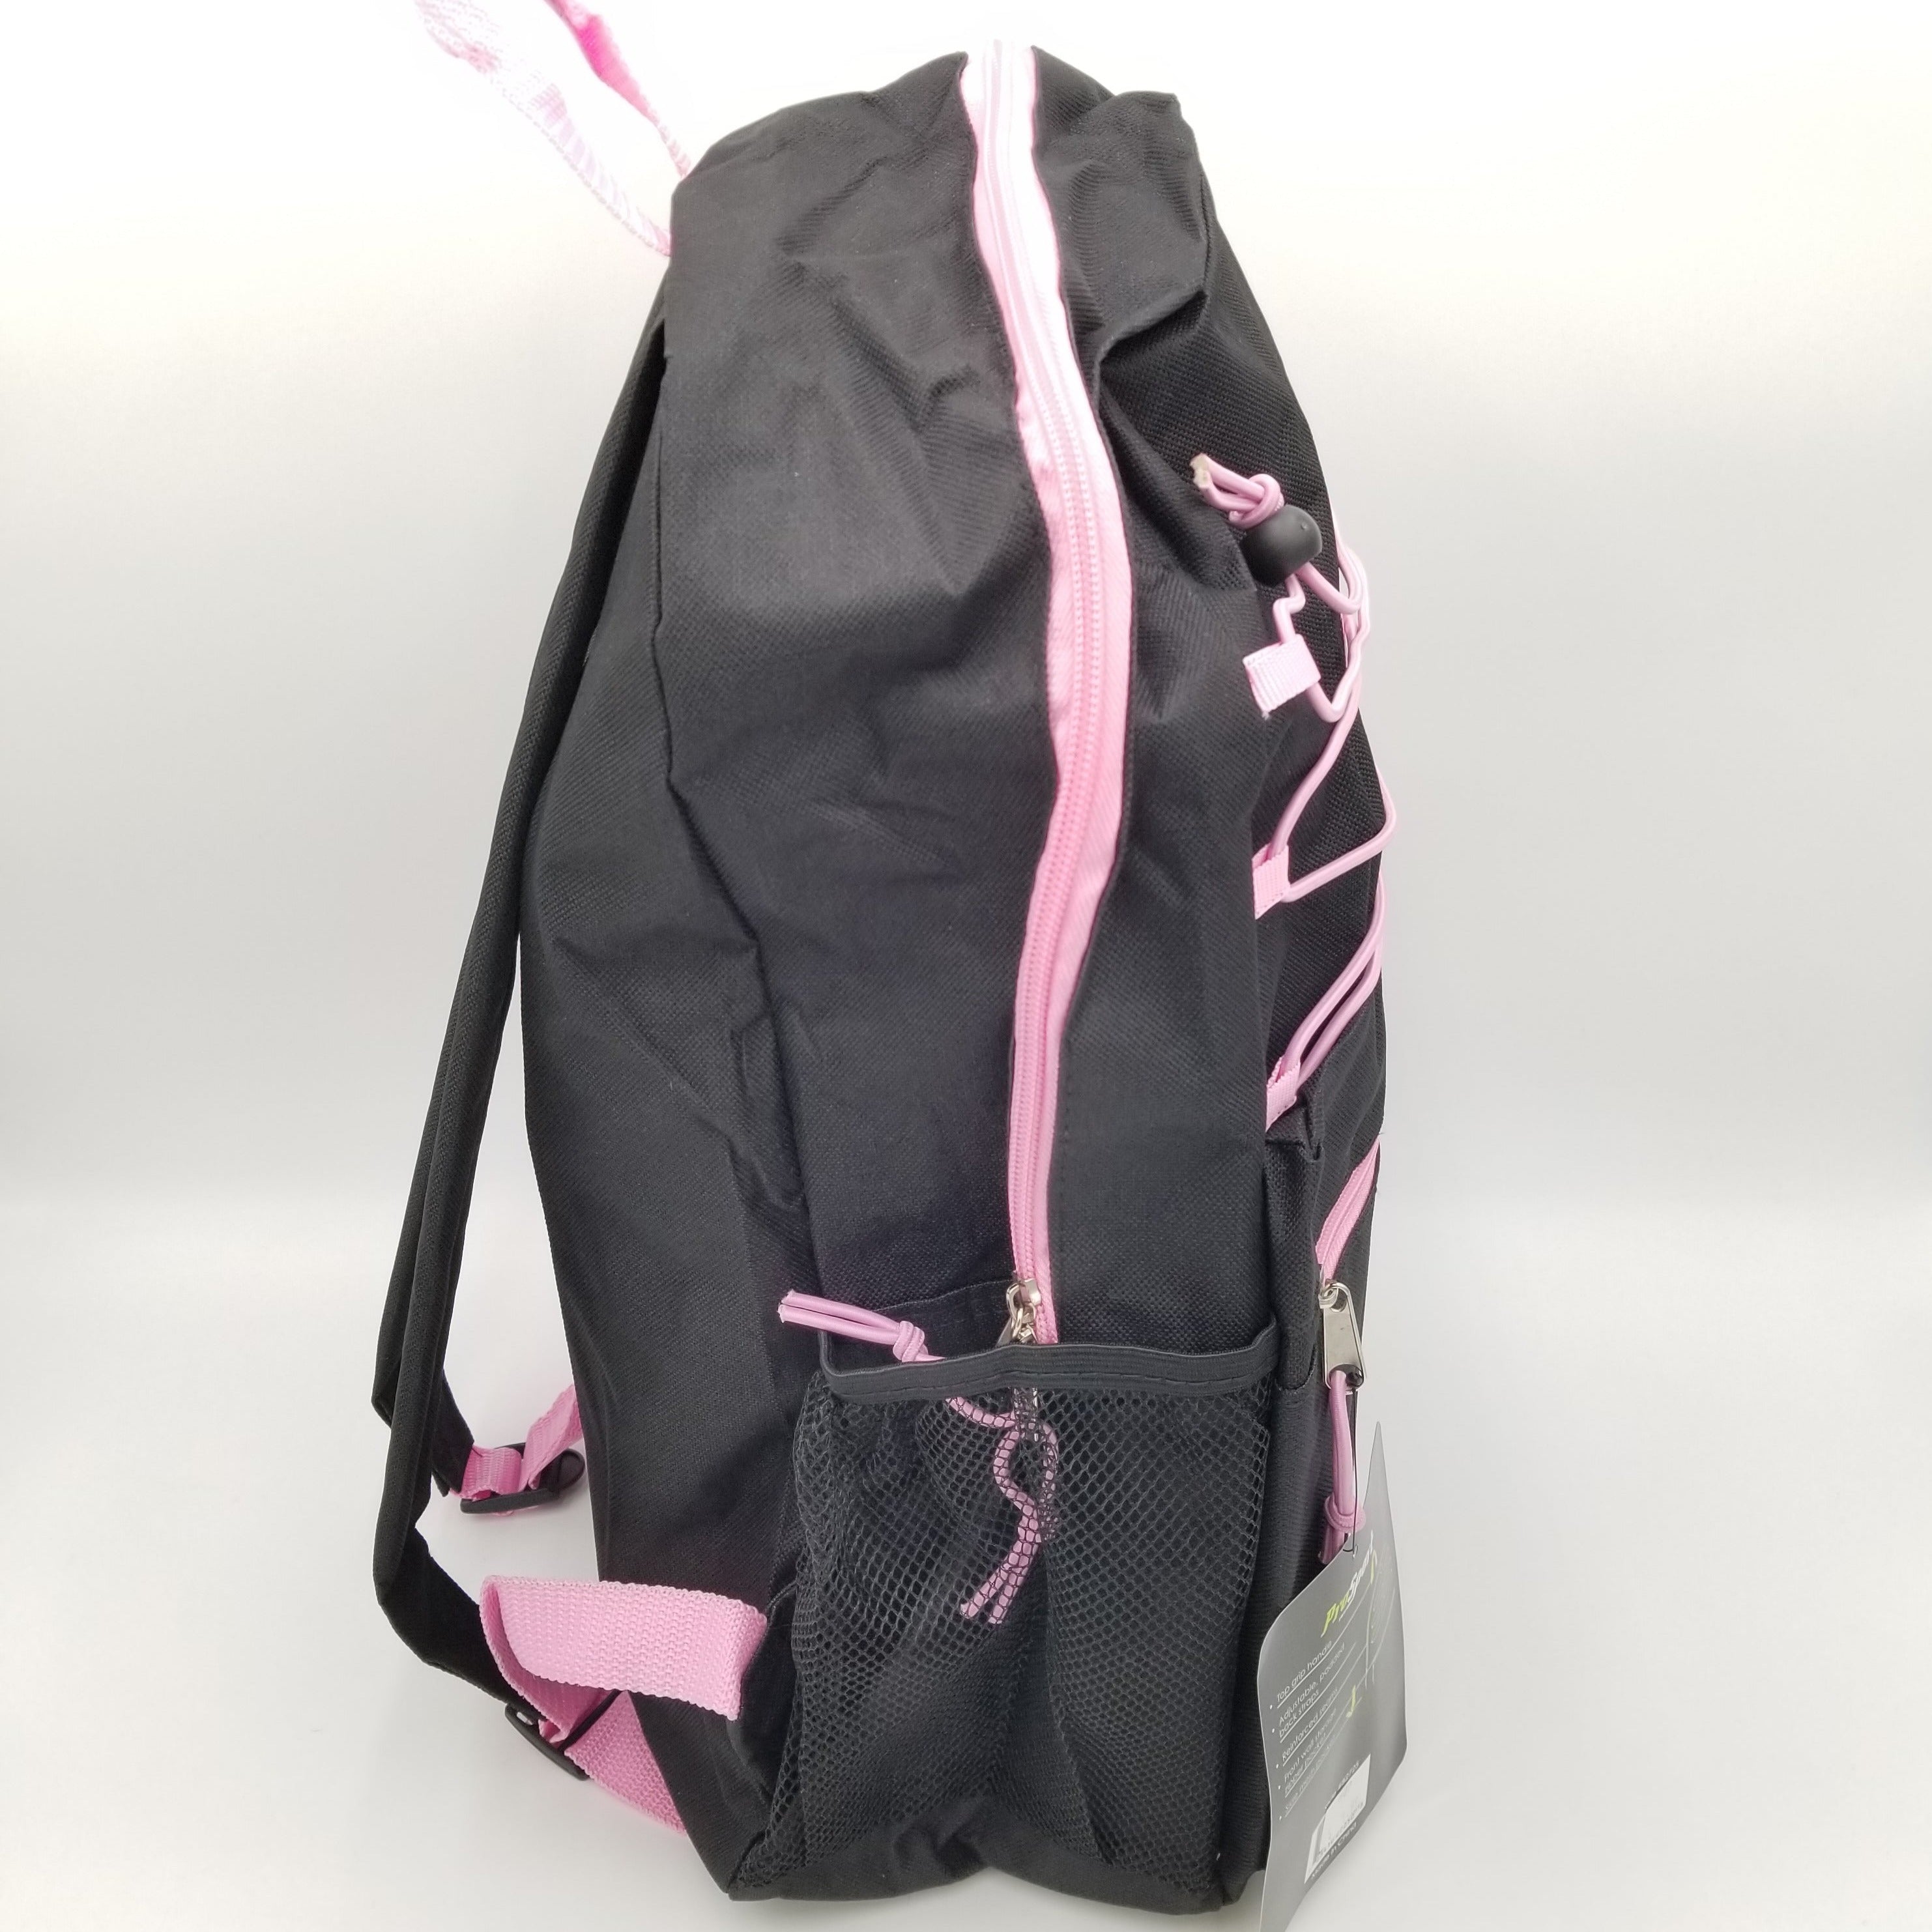 ProSport Backpack- Black/Pink